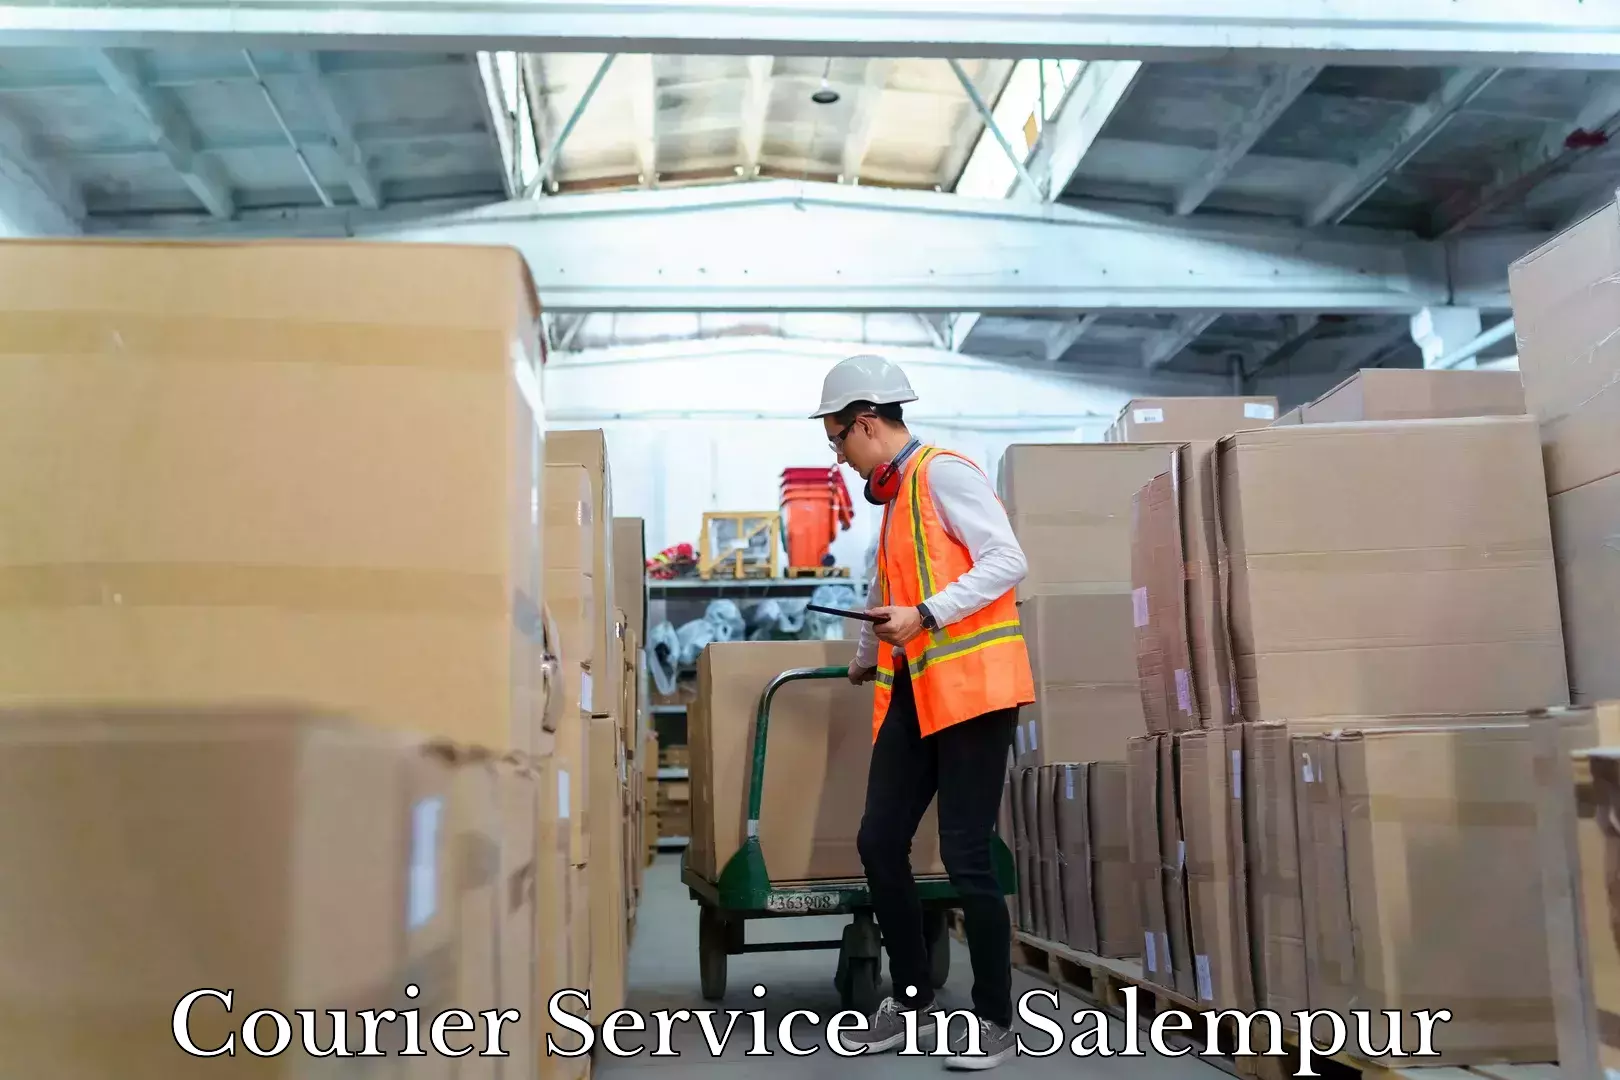 Courier service comparison in Salempur